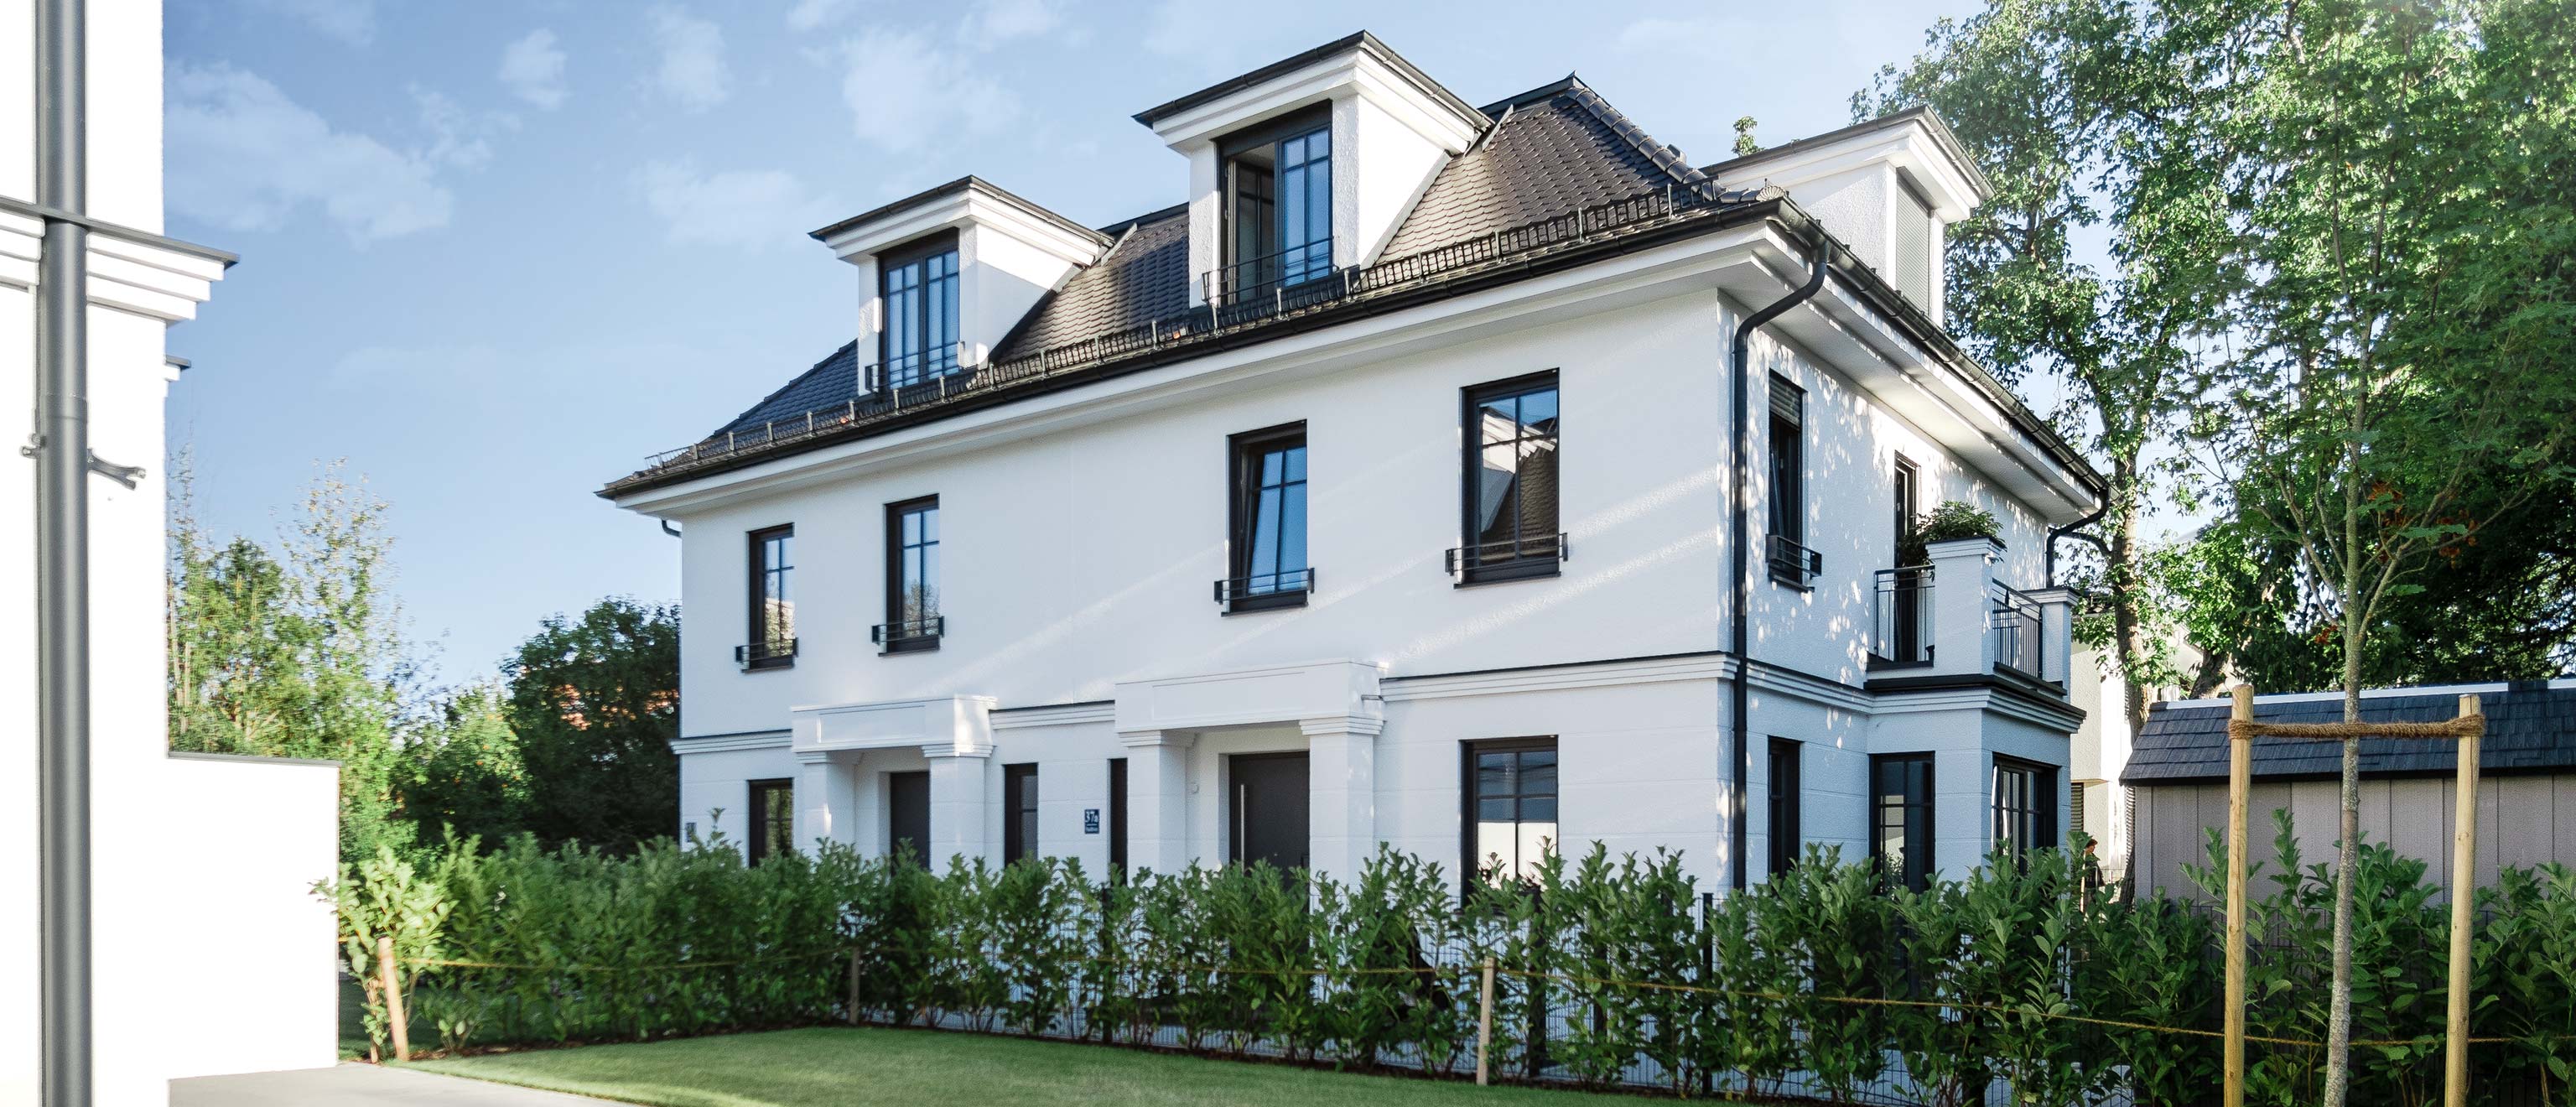 LEAN BAU Referenz | 2 Doppelhäuser mit Duplexgaragen | München